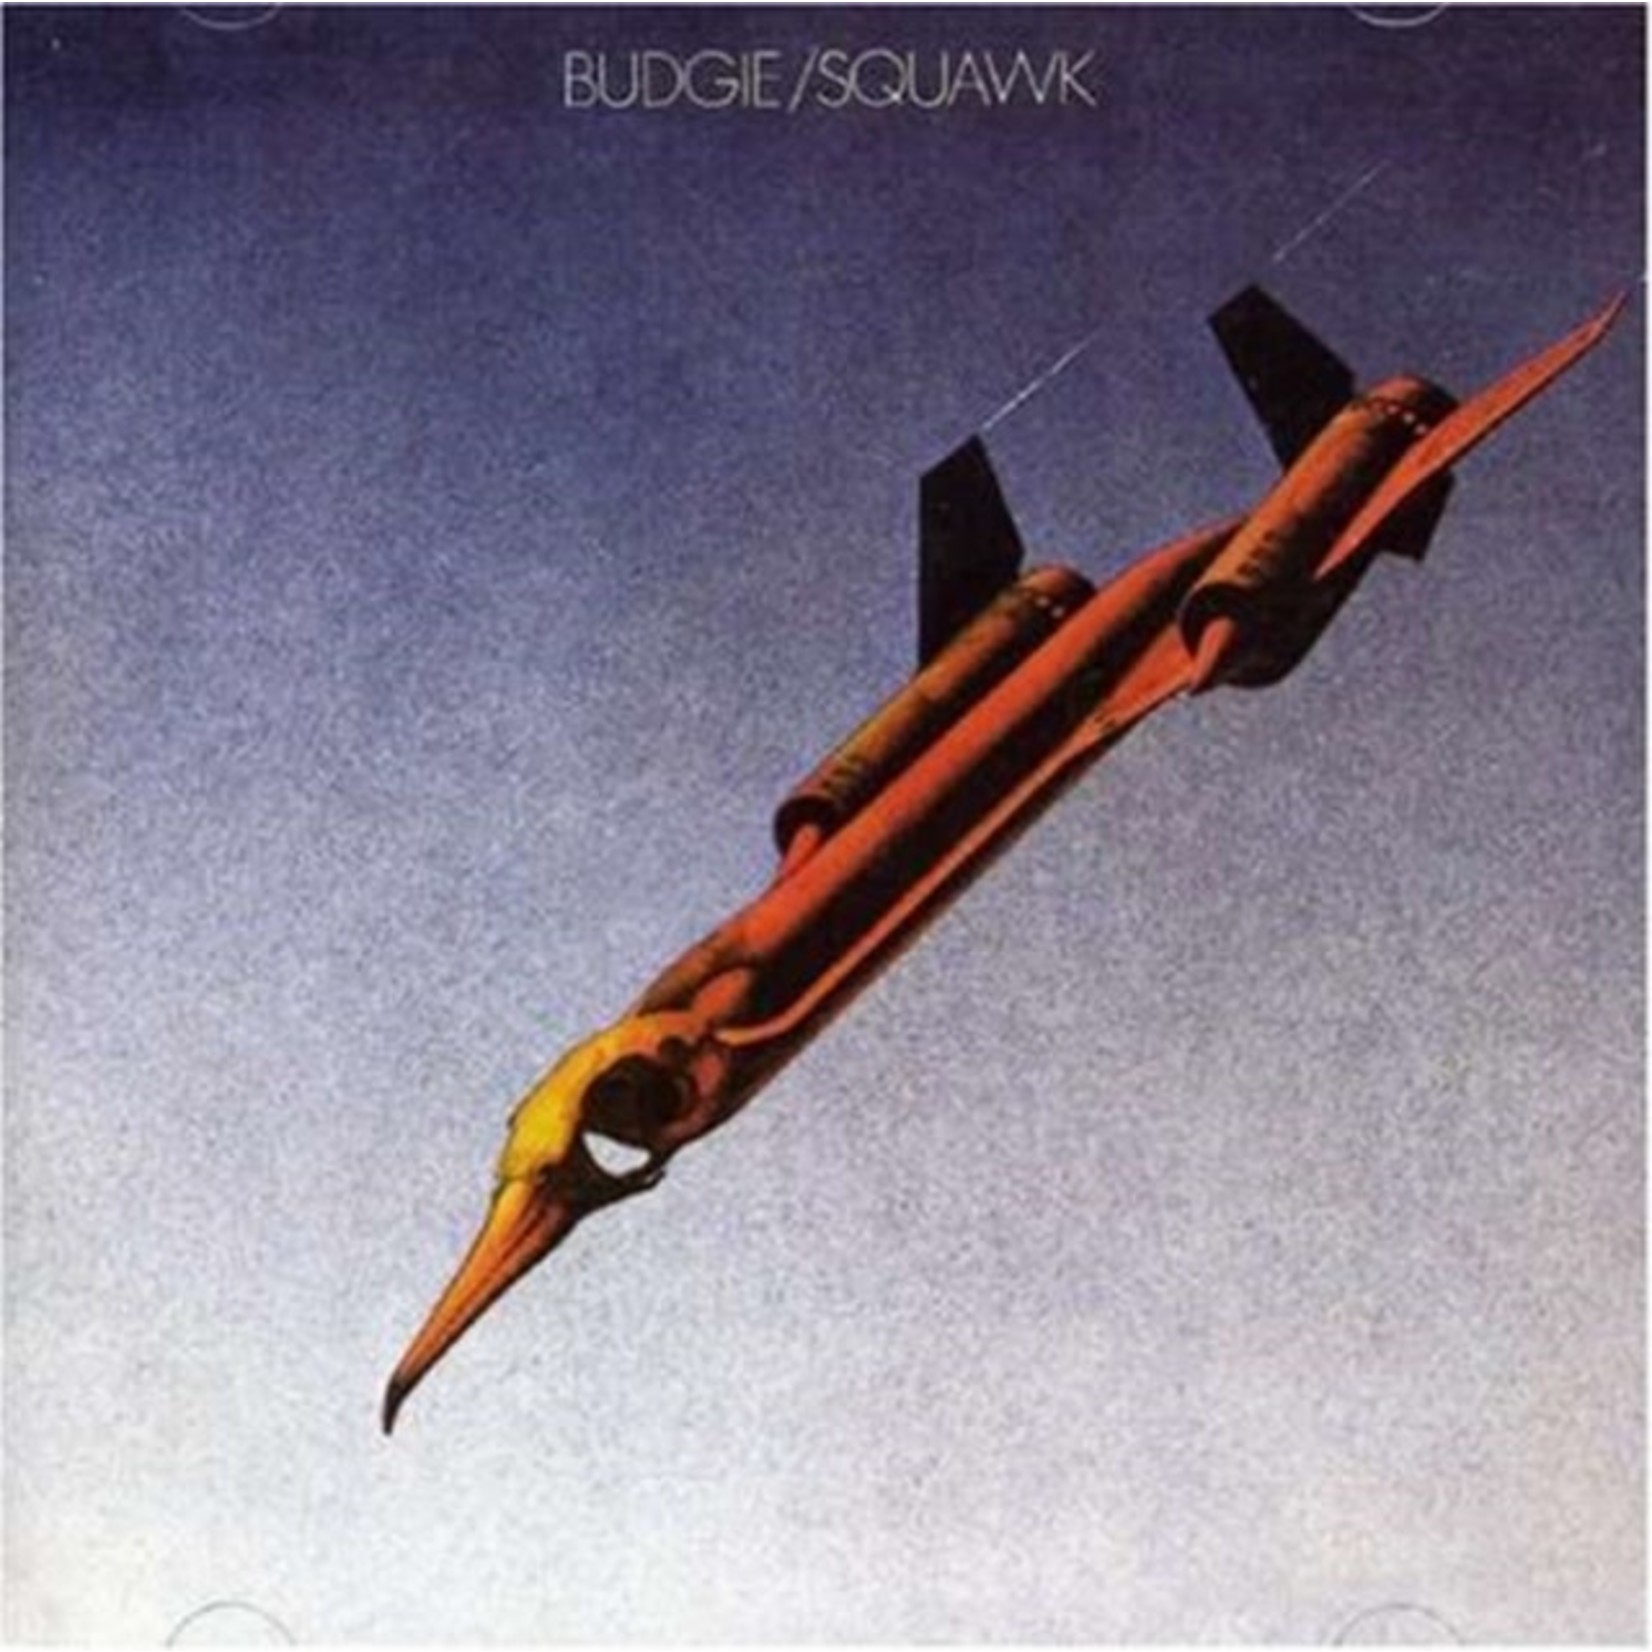 Budgie - Squawk [LP]